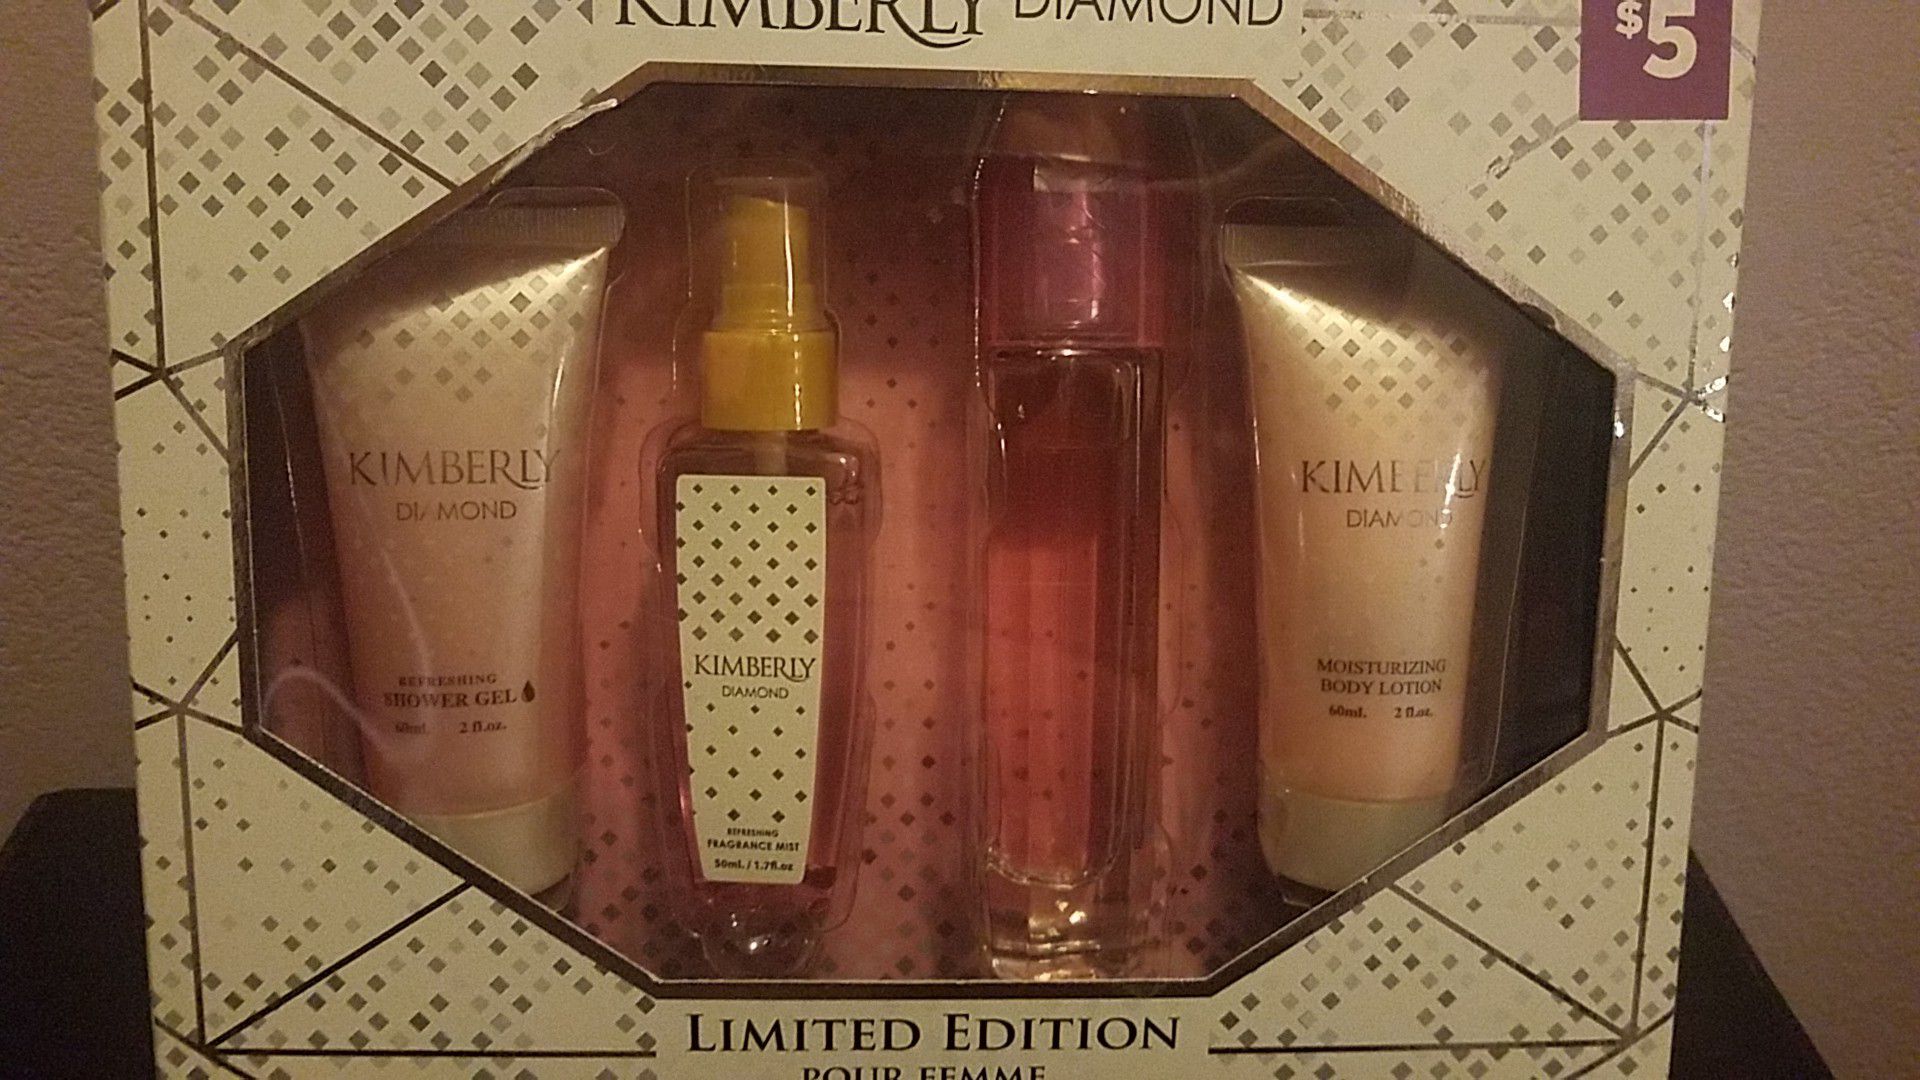 Kimberly Diamond 4 pc Gift Set